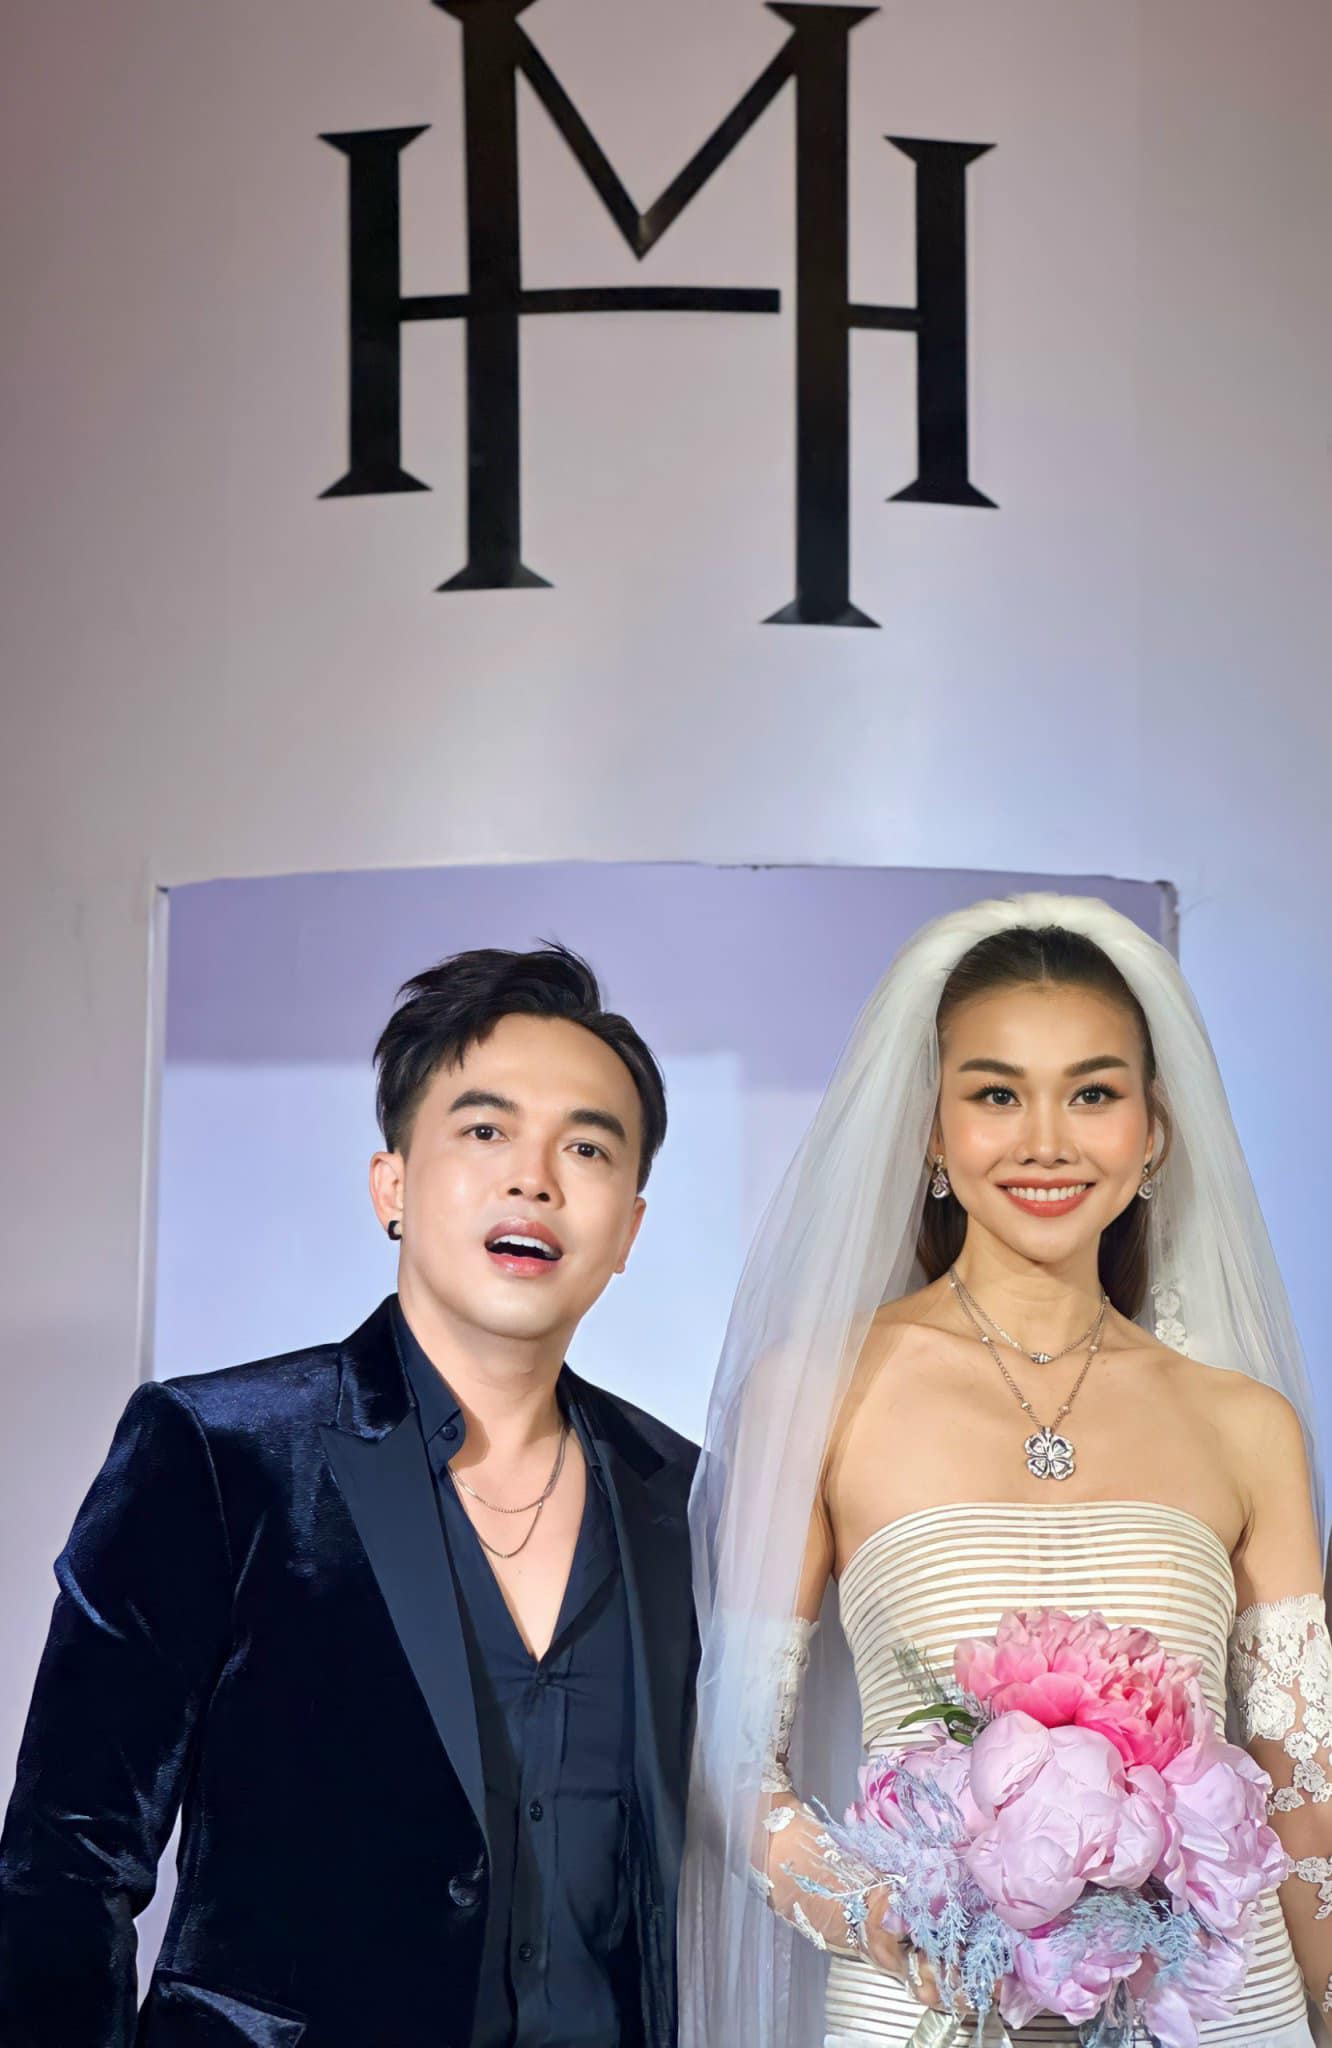 Siêu mẫu Thanh Hằng làm đám cưới với chồng nhạc trưởng - Ảnh 11.